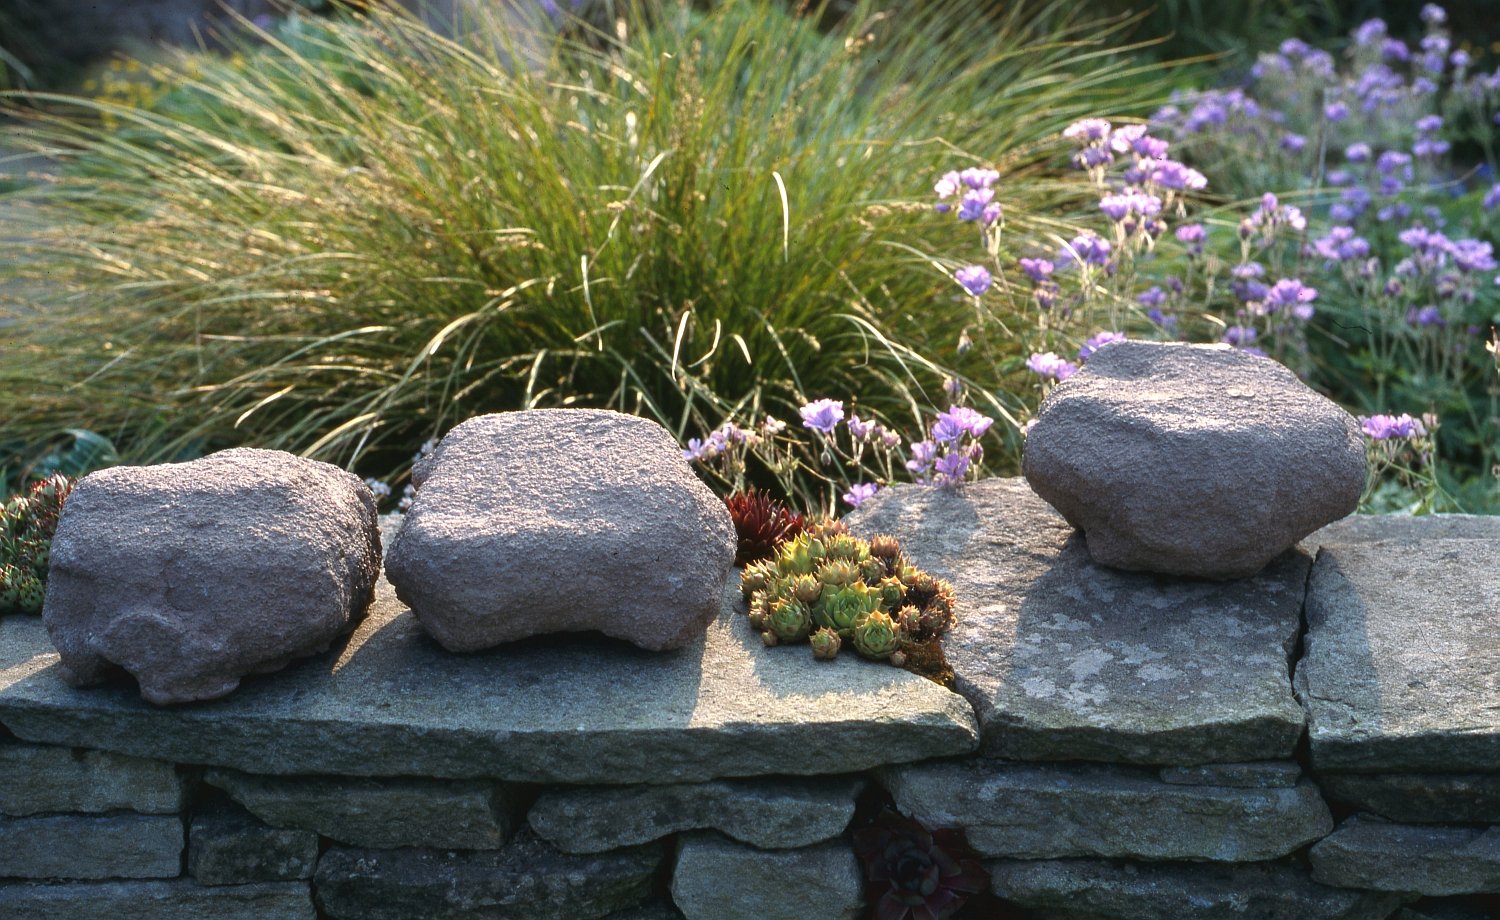 Clay boulders in garden